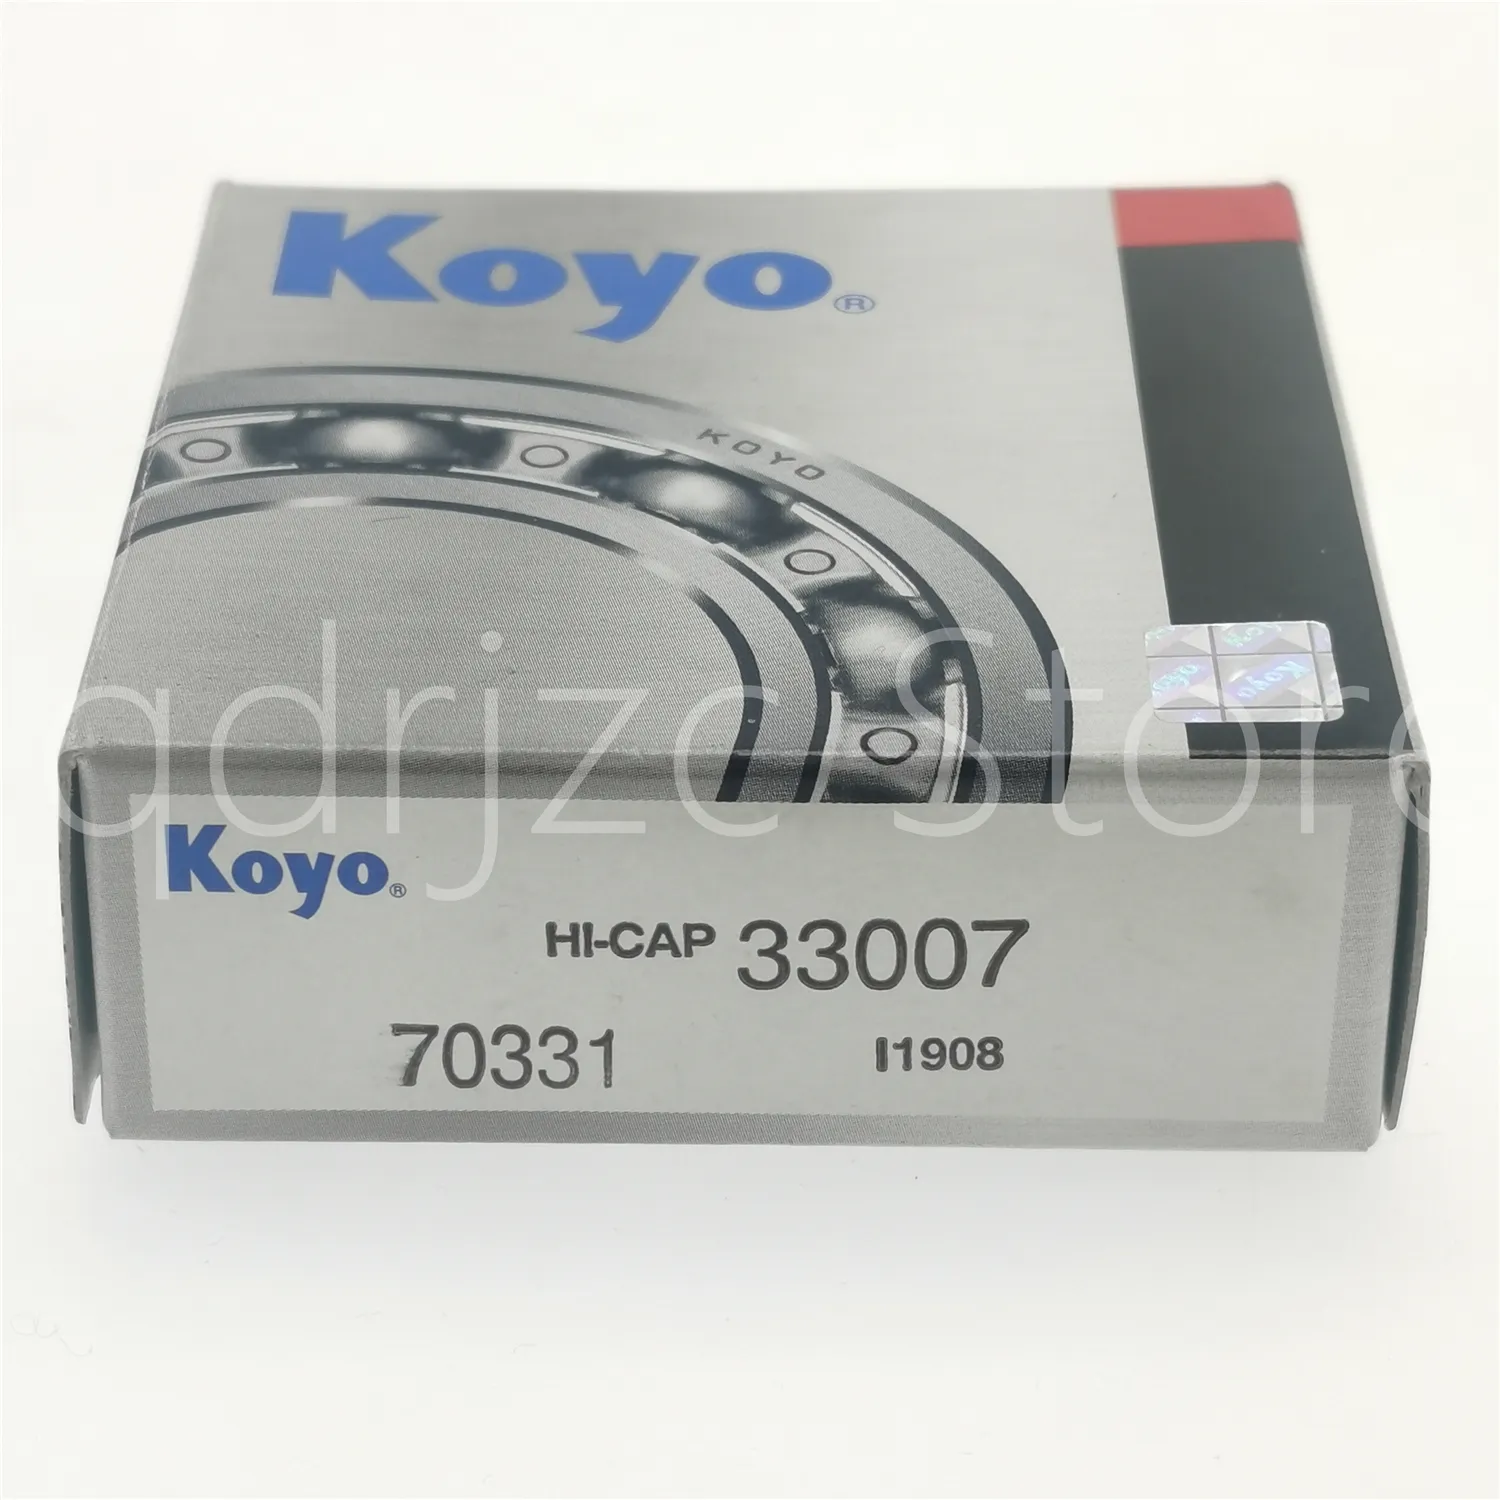 K-O-Y-O rolamento de rolos cônicos 33007-N 35mm X 62mm X 21mm